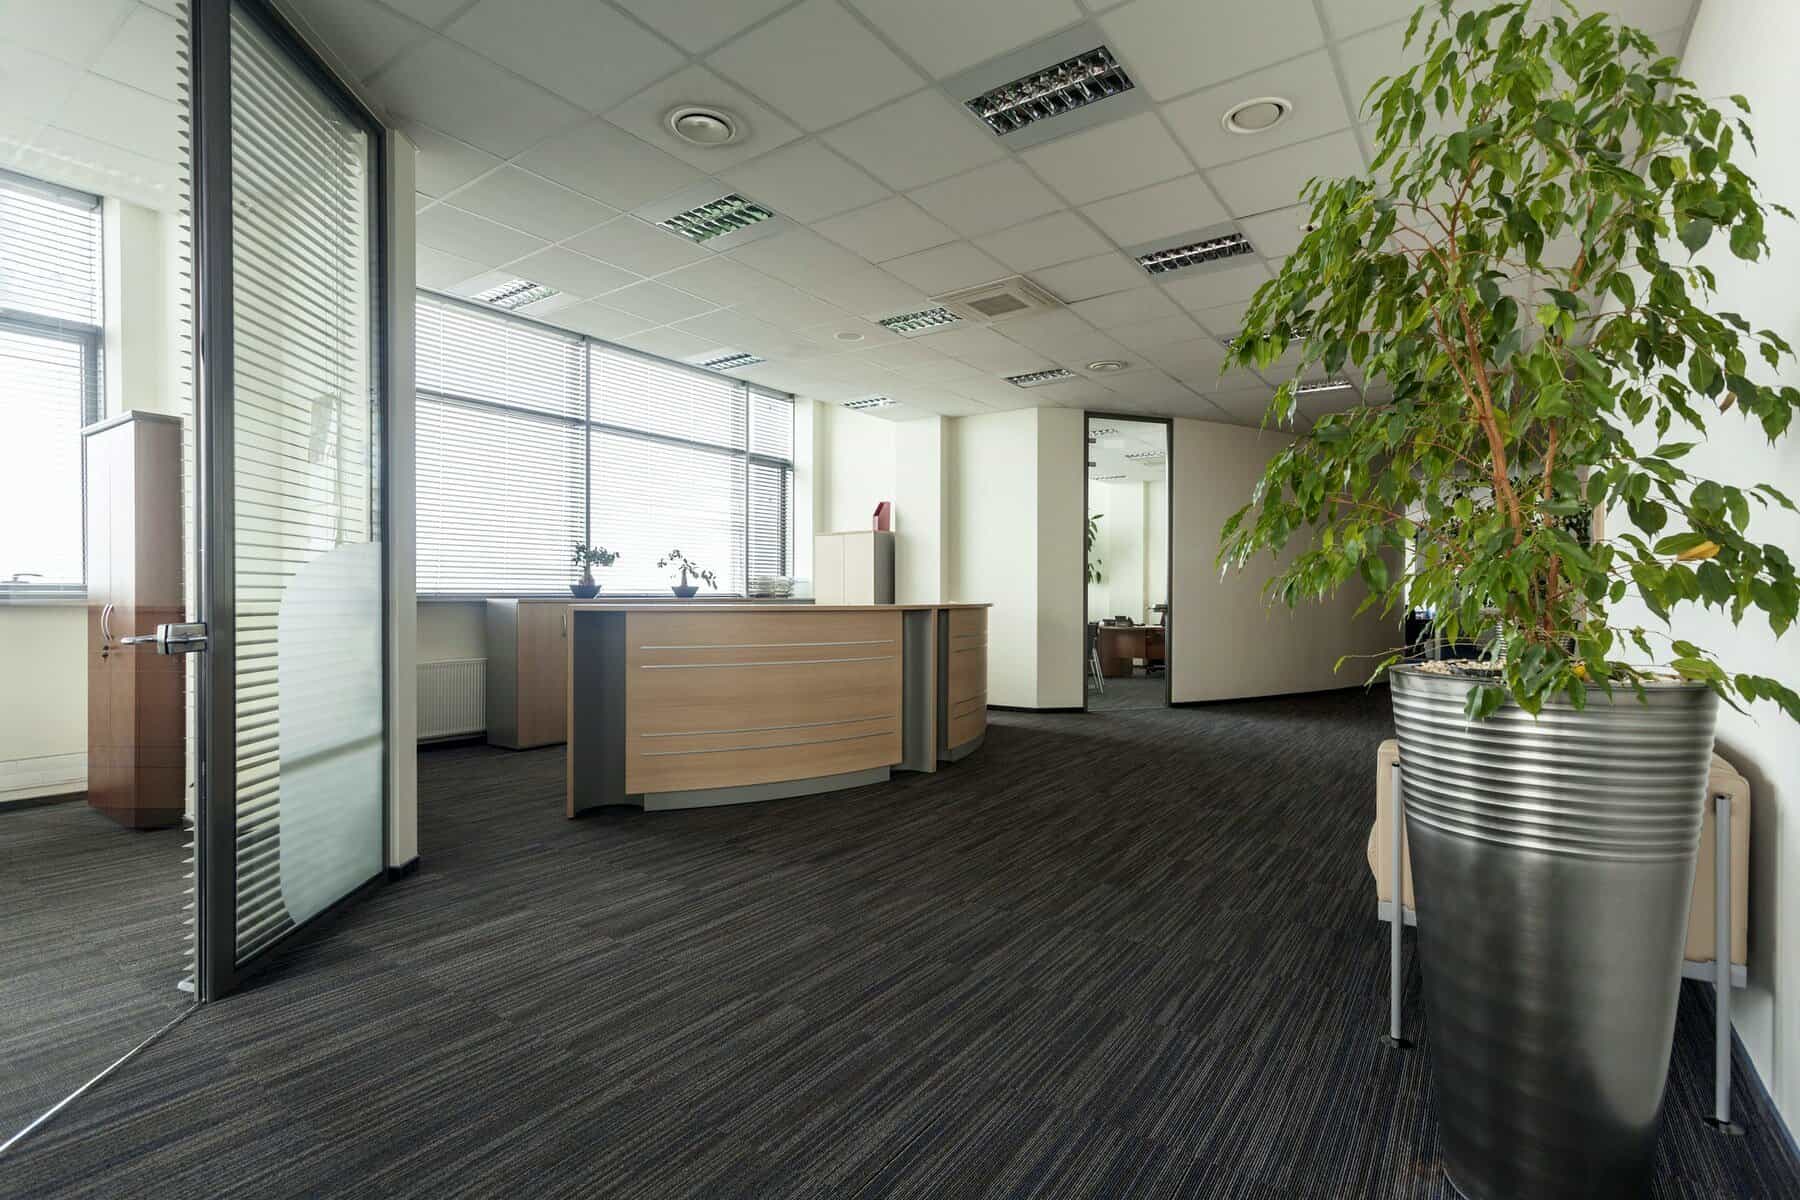 Office corridor with wood floorings